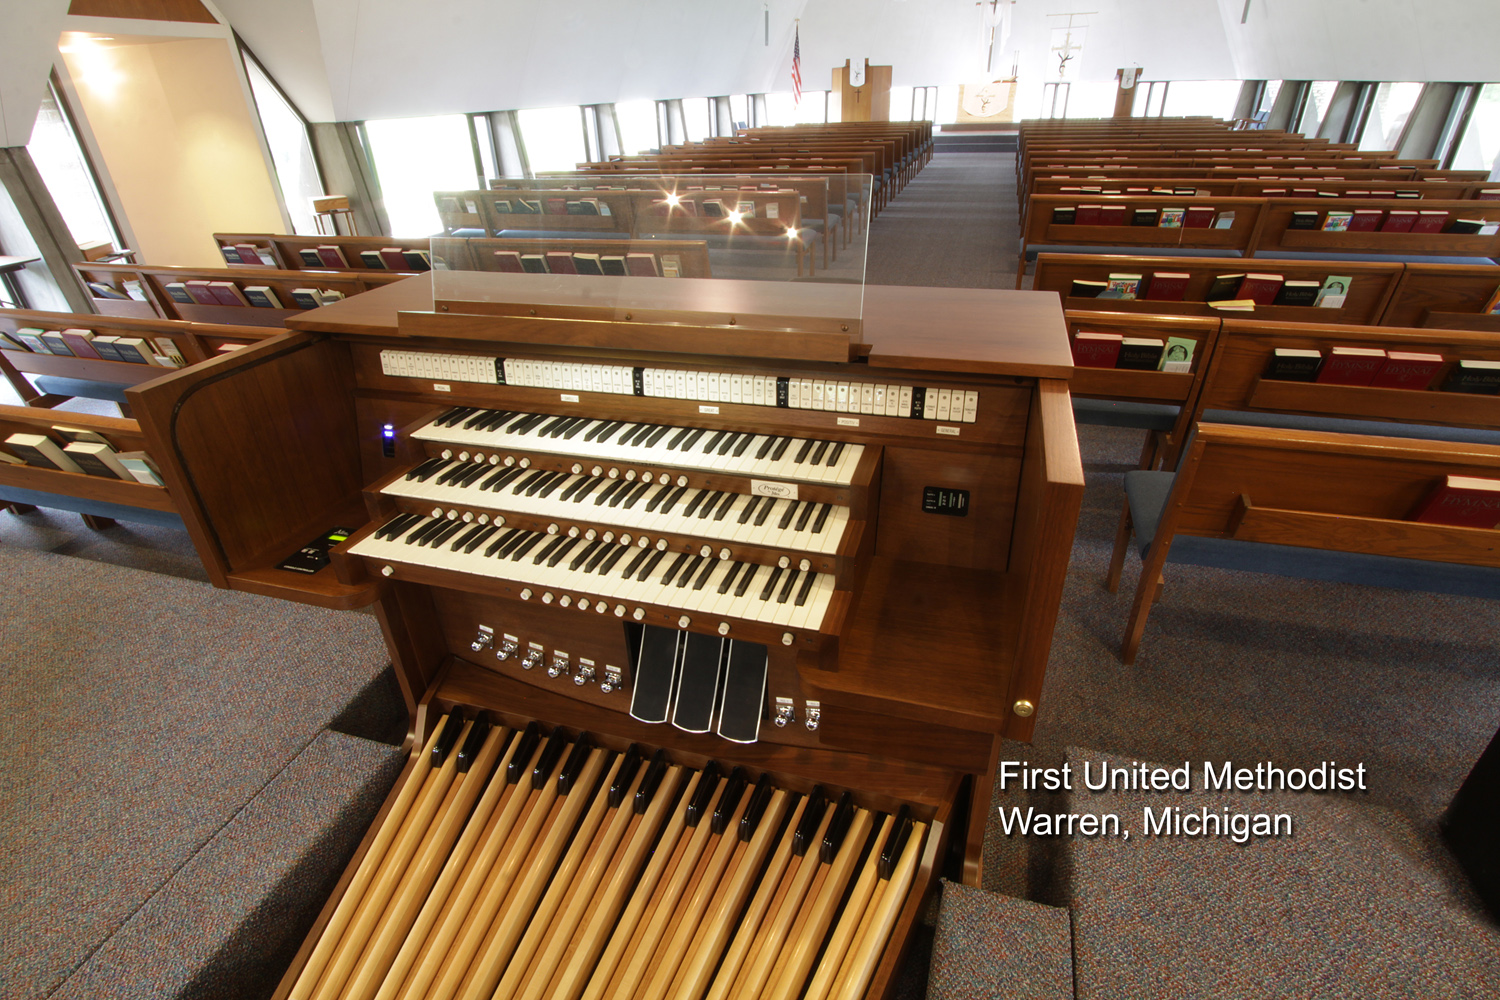 First United Methodist, Warren, Michigan